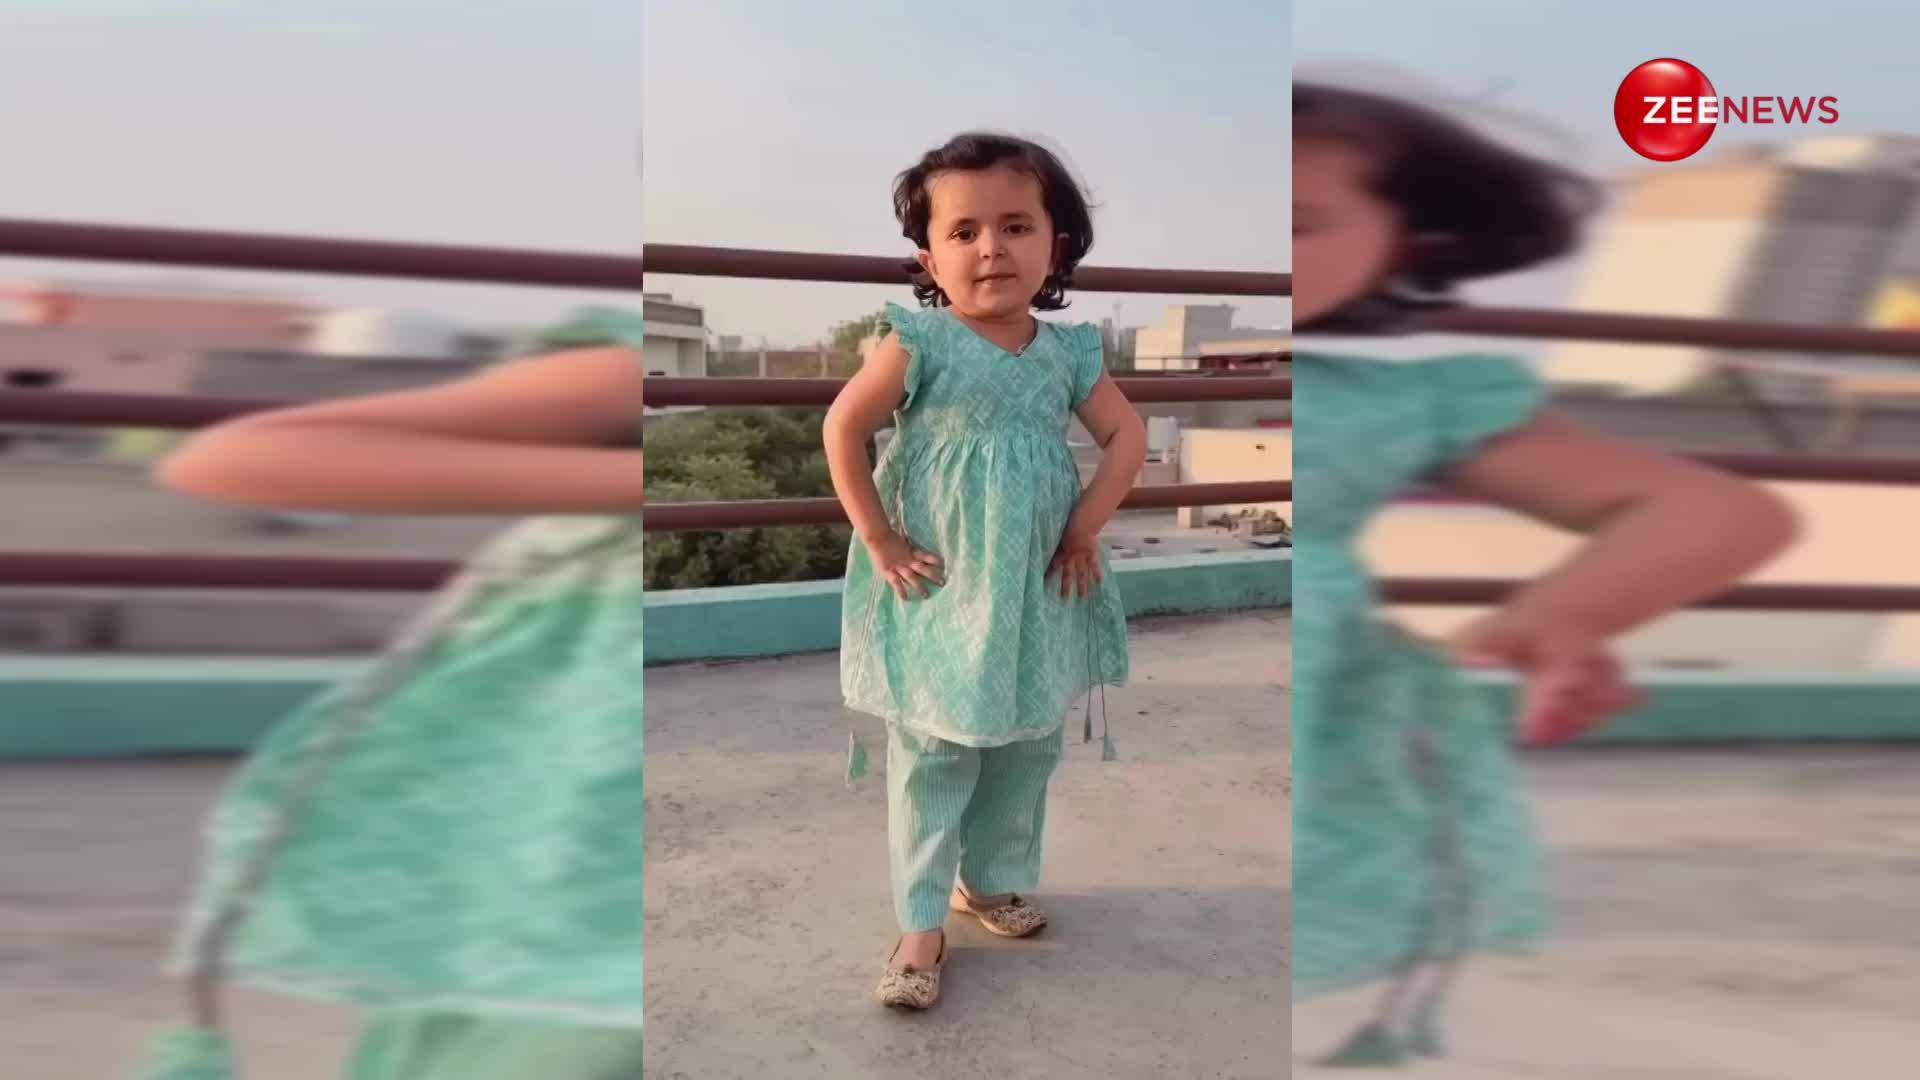 2 साल की नन्ही लड़की ने हरियाणवी गाने पर मटकाई अपनी पतली कमरिया, किलर अदाओं से जीत लिया दिल